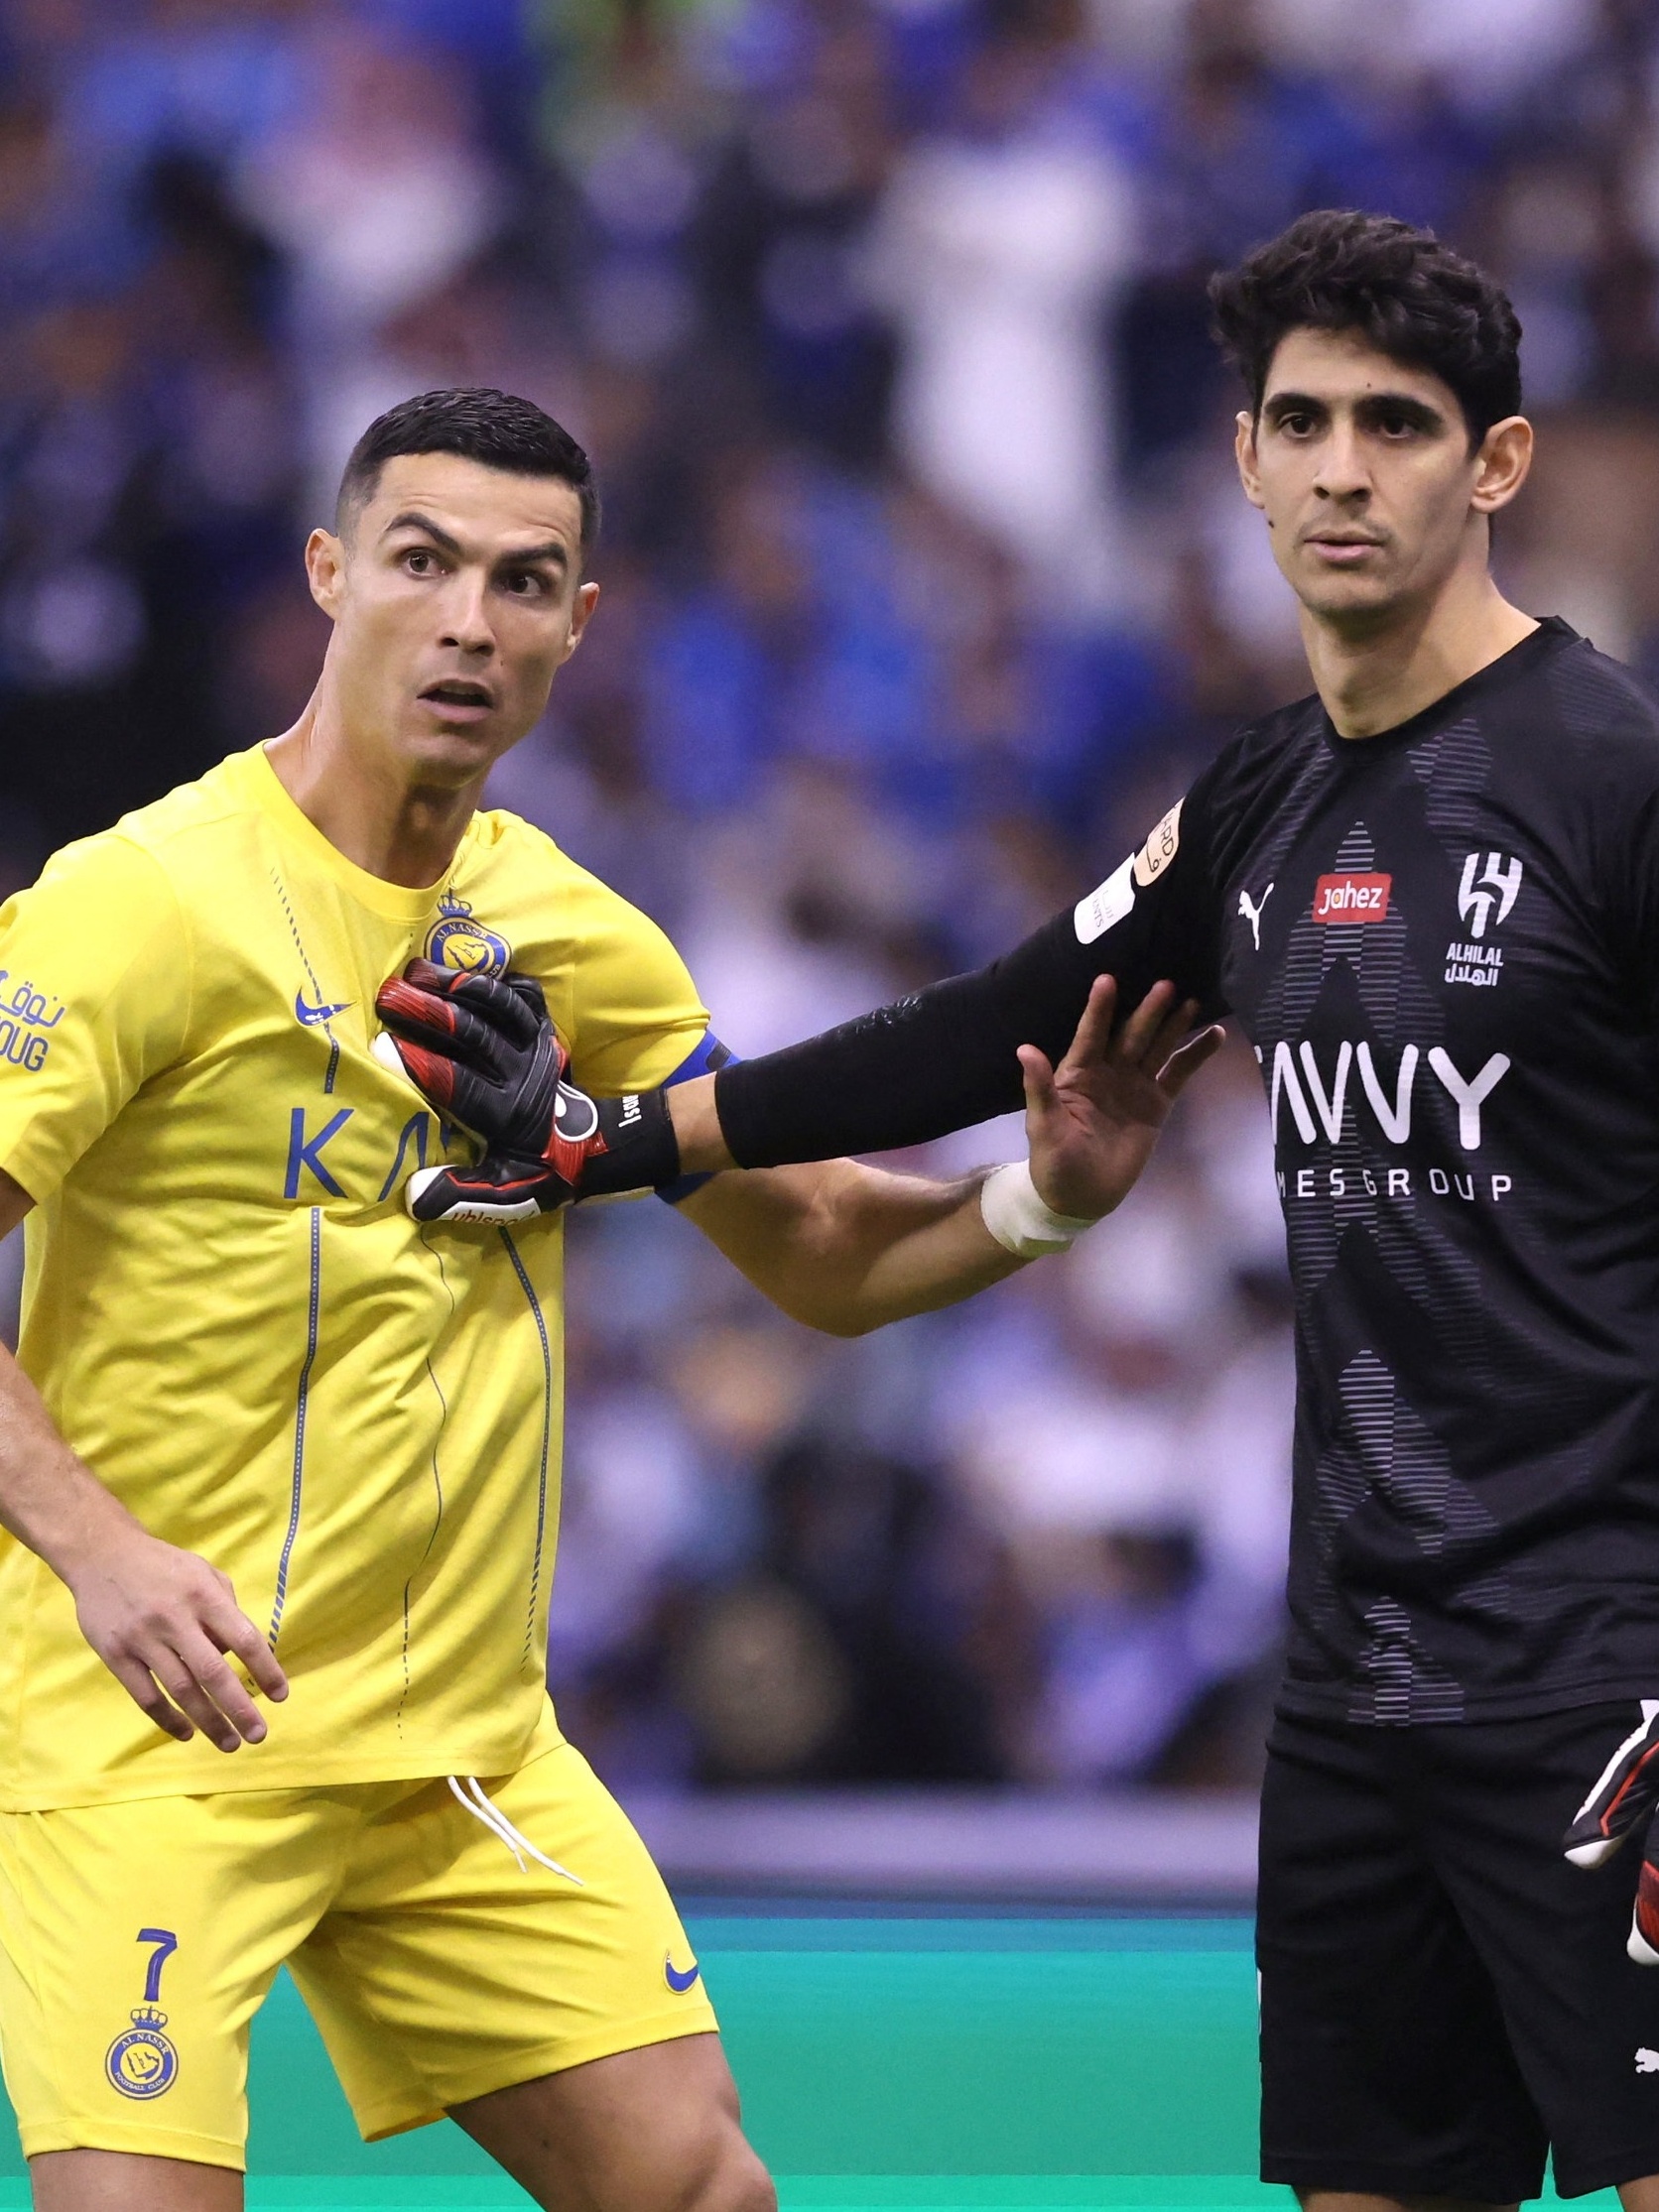 O jogo em que um gesto de Ronaldo valeu por um golo: Al Nassr